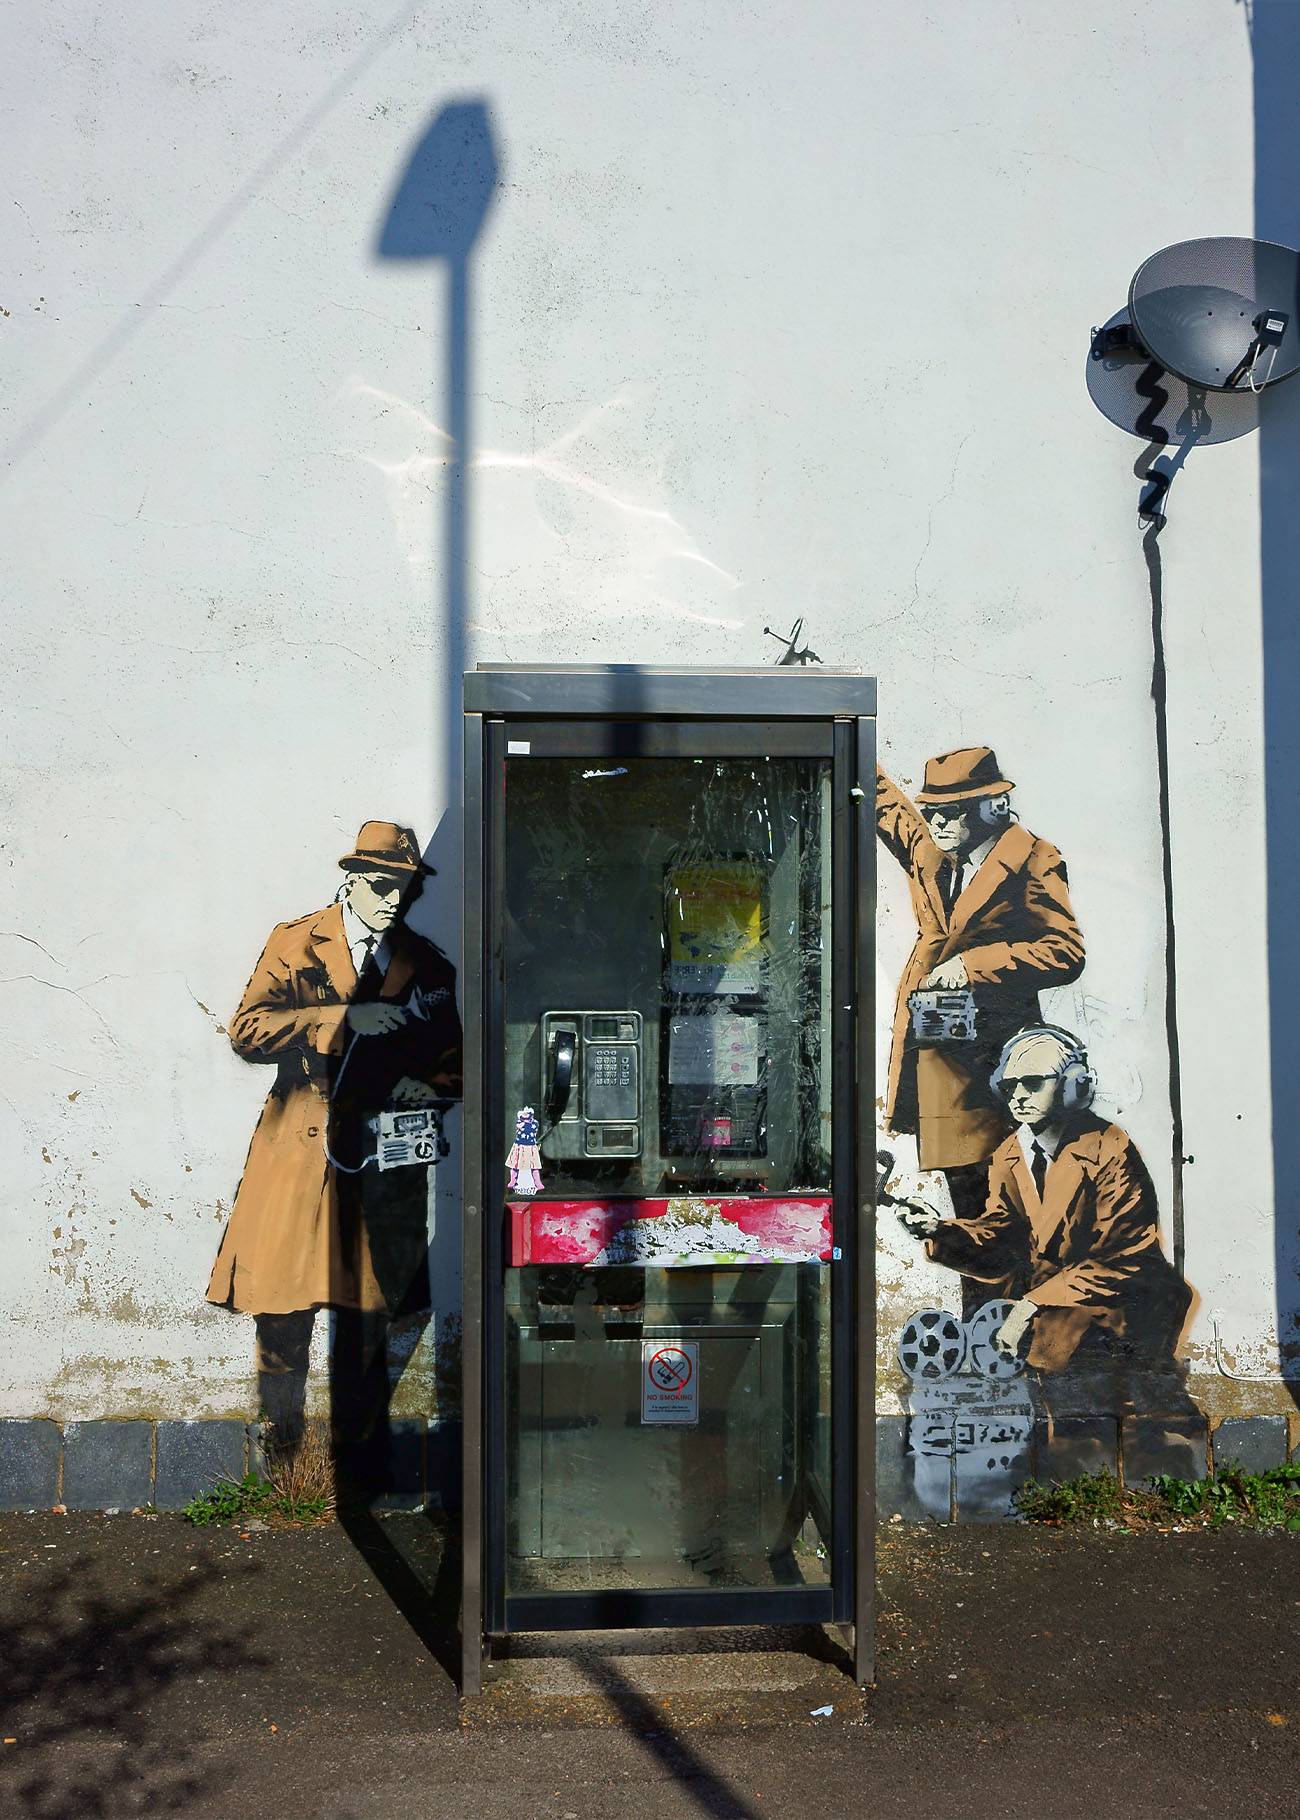 Kunstvoll-ironische Street Art vor einer mittlerweile abgebauten Telefonzelle der Deutschen Telekom. 